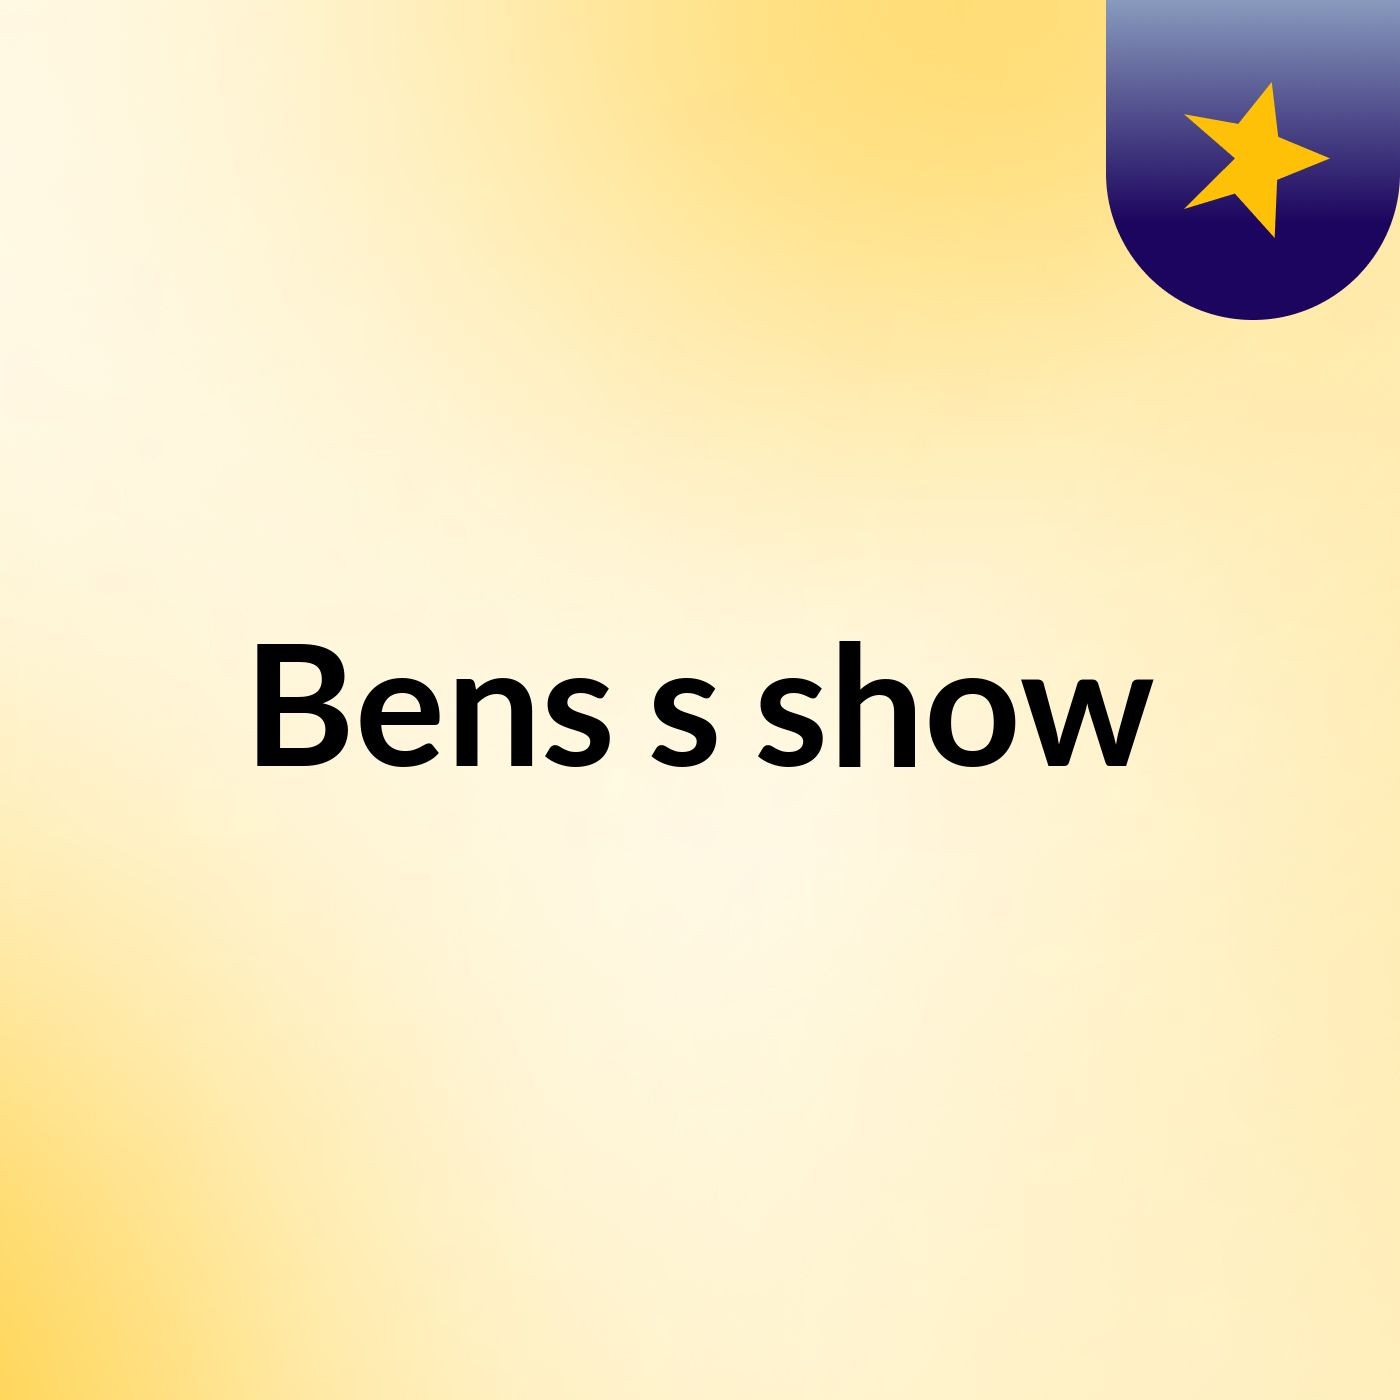 Bens's show